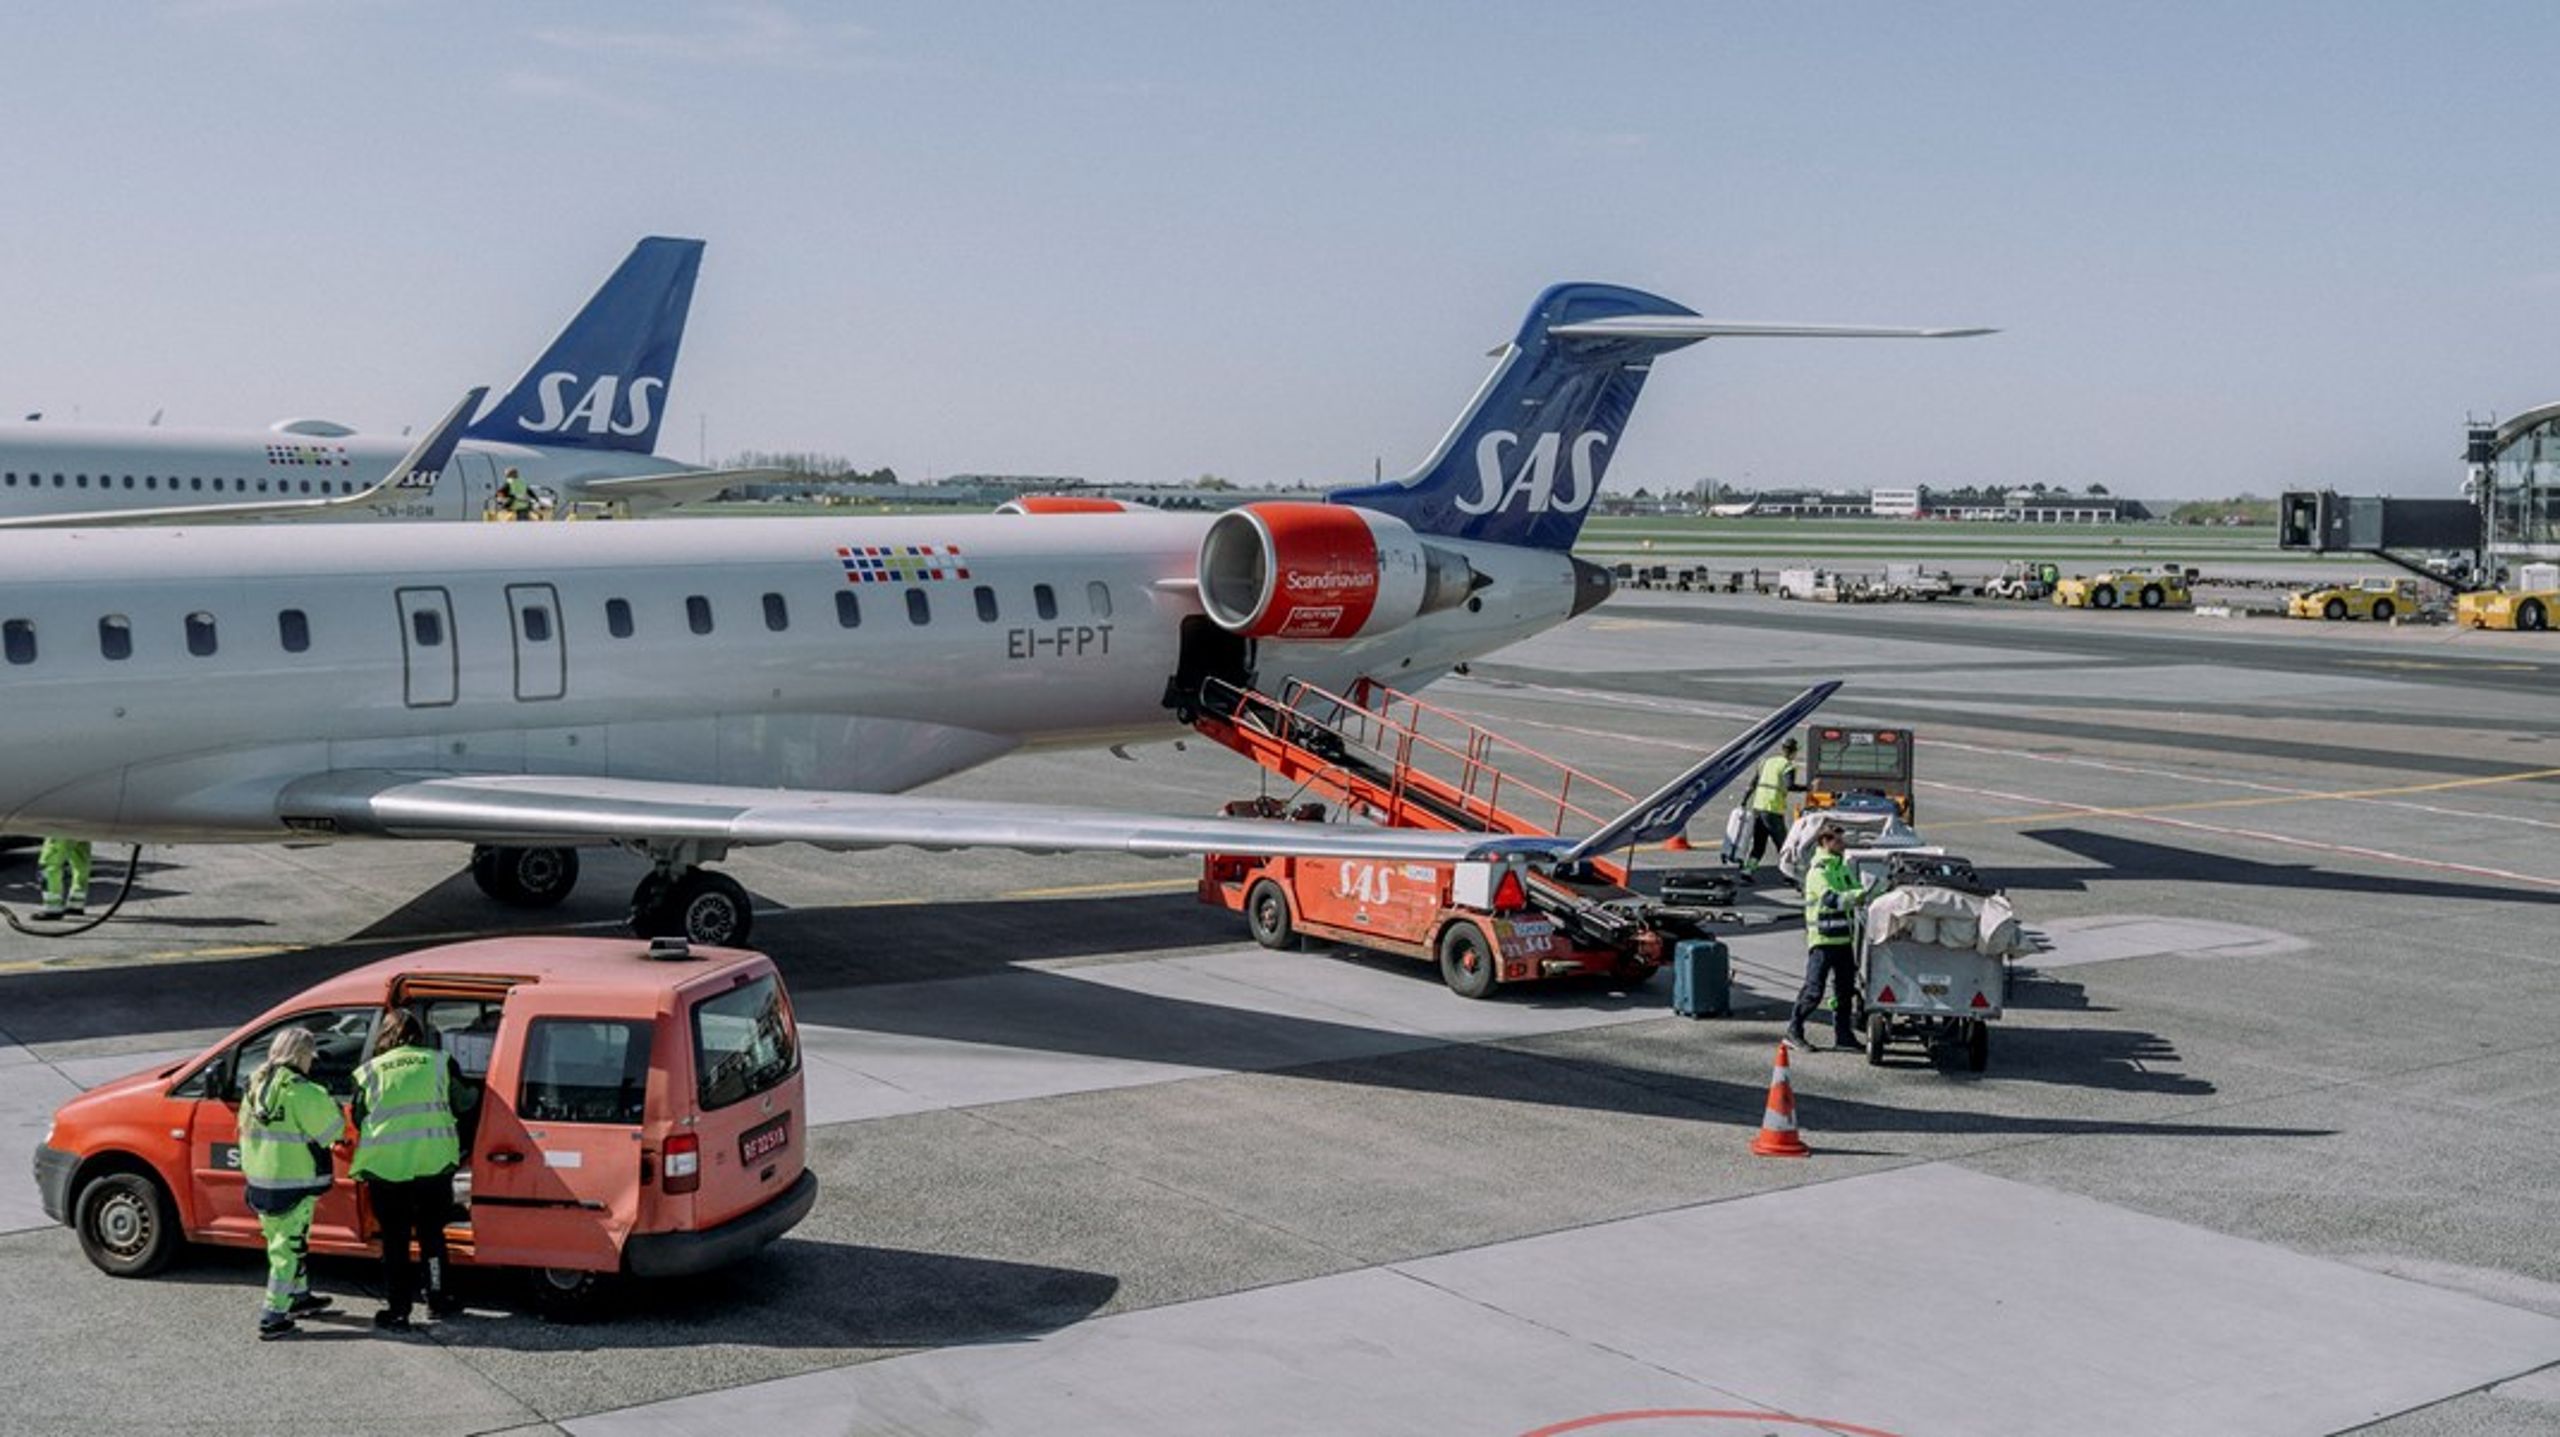 Kombinationen af nye fly baseret på el eller andre grønne drivmidler og eksisterende mindre lufthavne og flyvepladser kan blive begyndelsen på en helt ny type mobilitet i Danmark om få år, skriver Christian Poulsen.